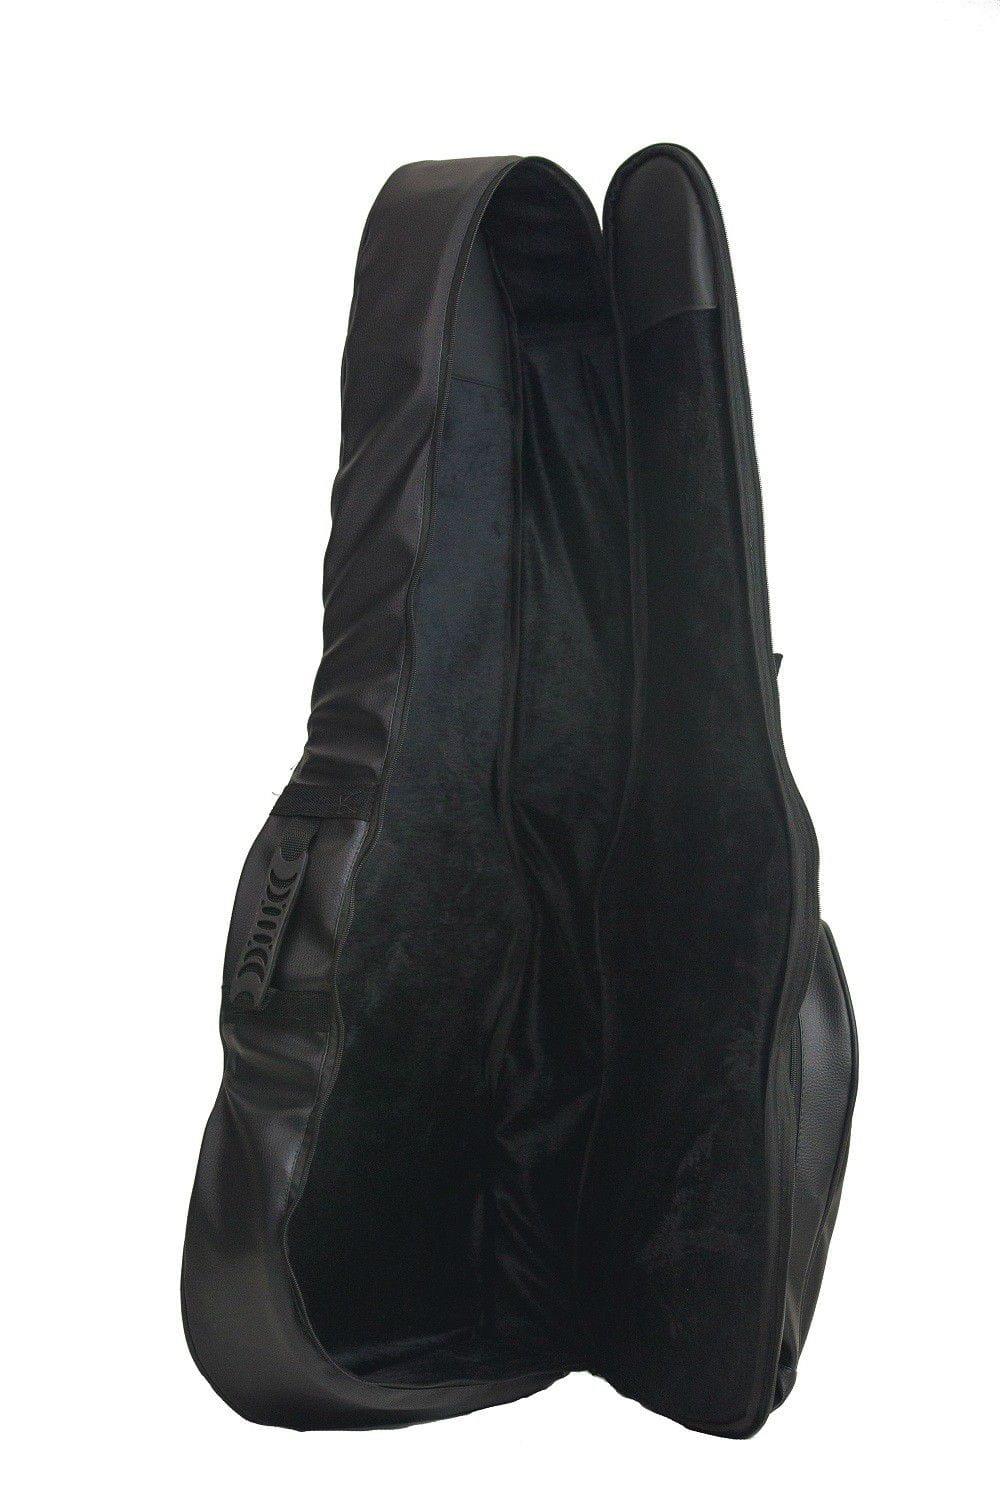 Capa Bag para Violão Clássico Couro Sintético